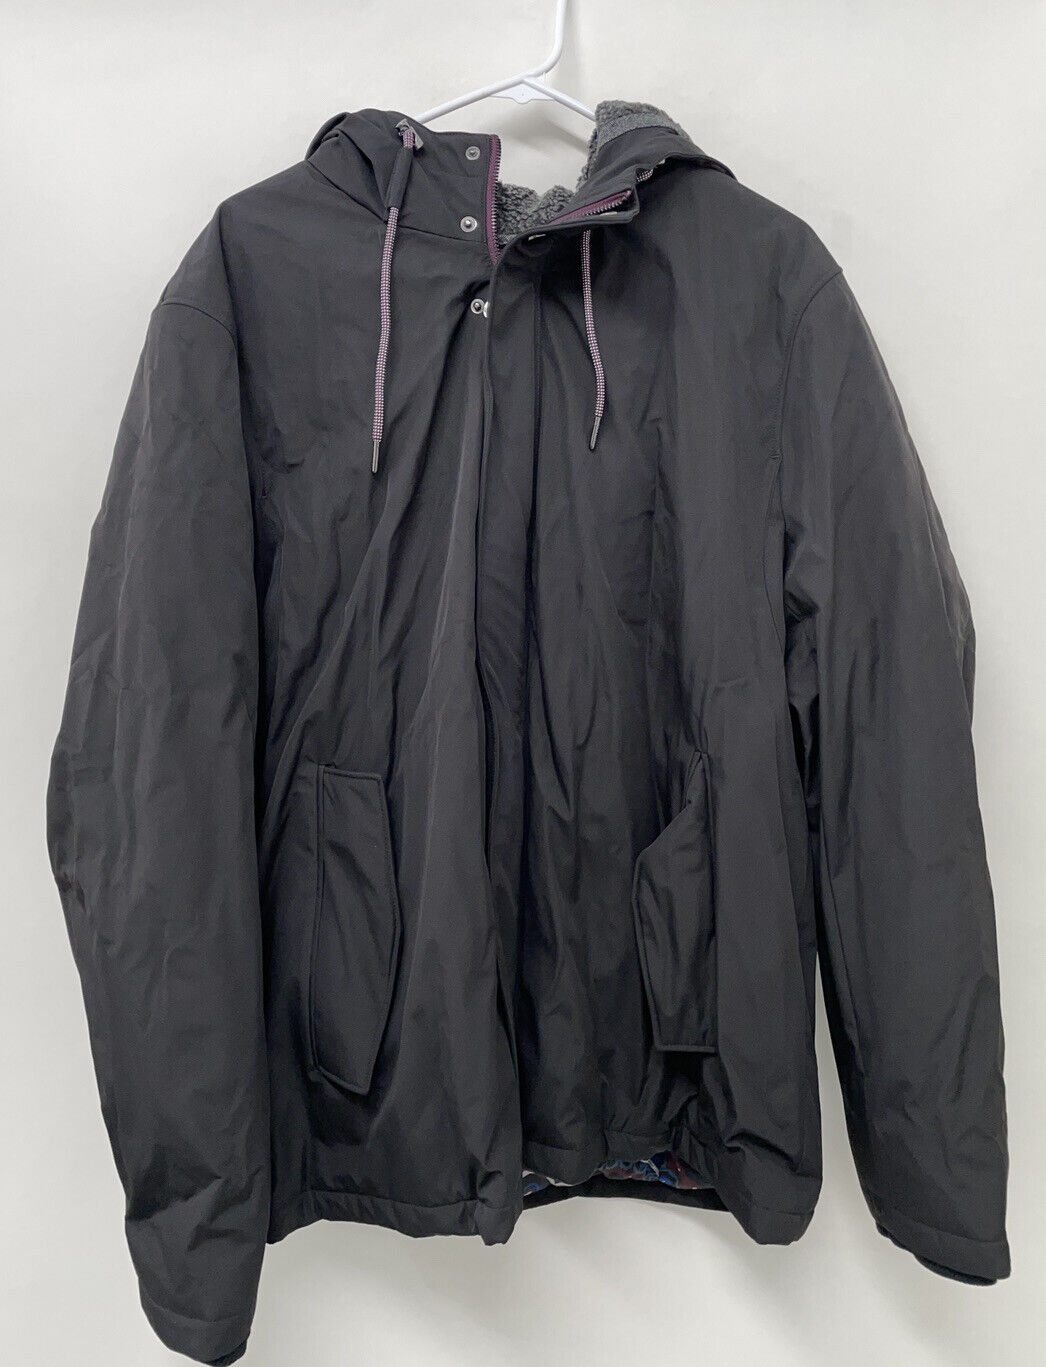 Ted Baker London Mens 7 Black Kinvara Slim Fit Hooded Puffer Jacket Coat Zip Up